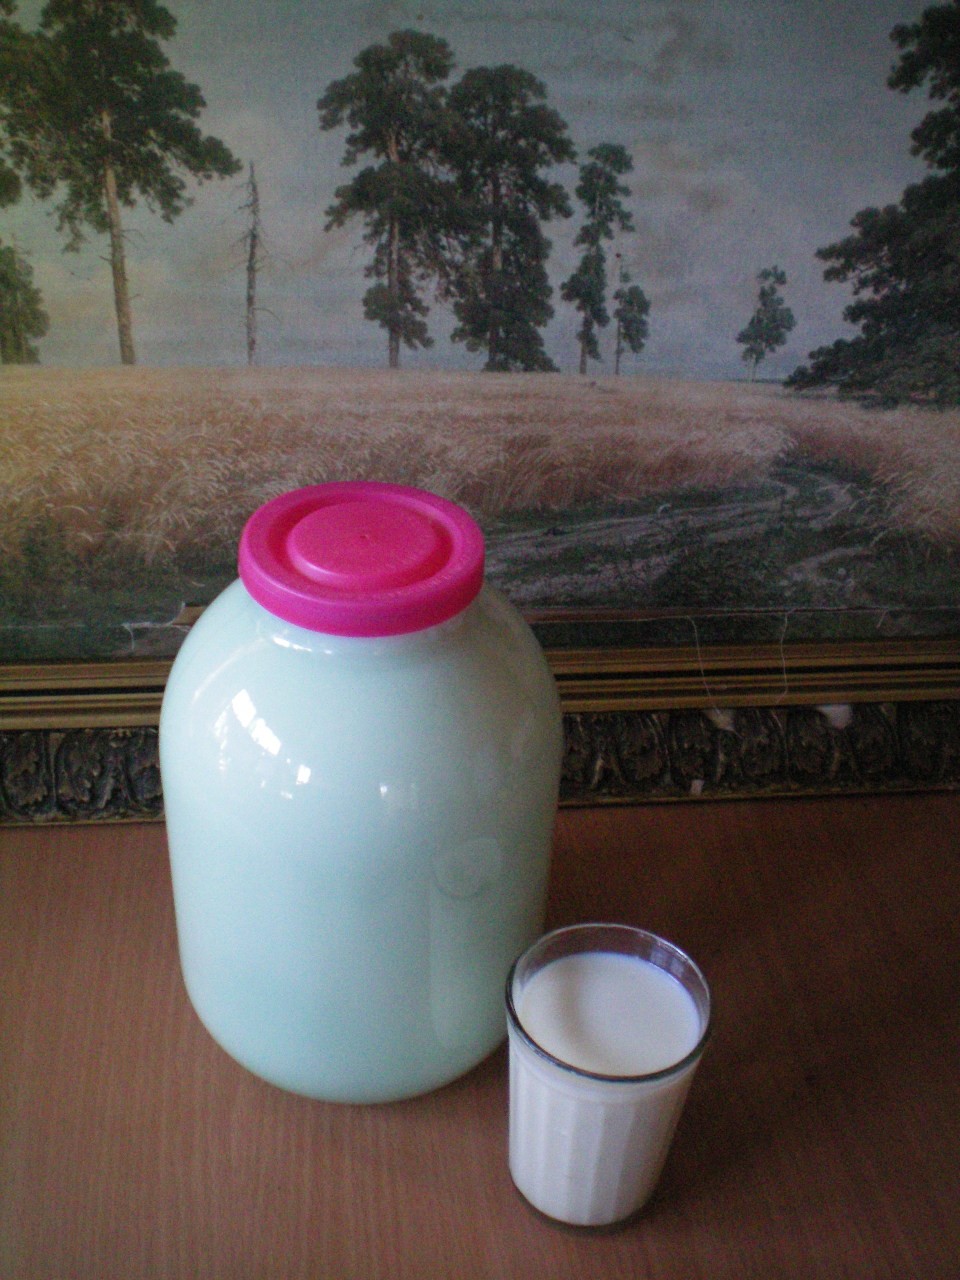 фото домашнего молока